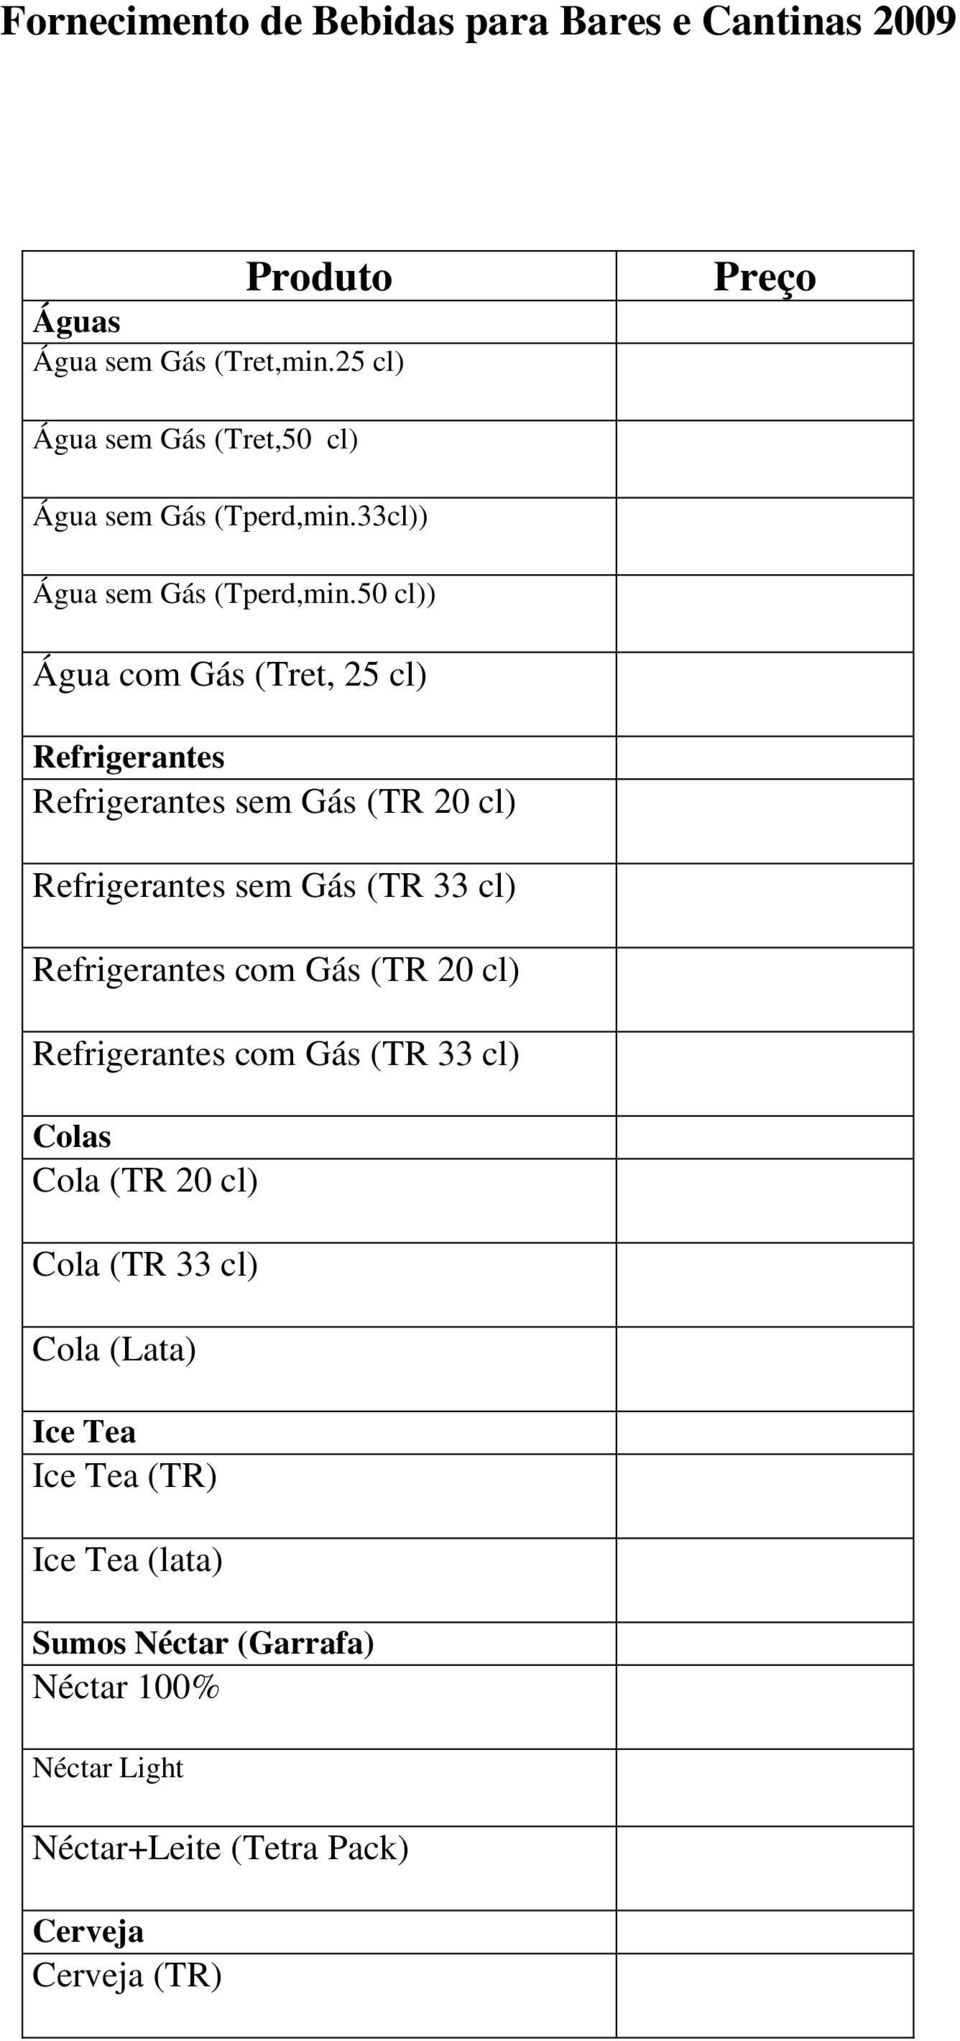 50 cl)) Água com Gás (Tret, 25 cl) Refrigerantes Refrigerantes sem Gás (TR 20 cl) Refrigerantes sem Gás (TR 33 cl) Refrigerantes com